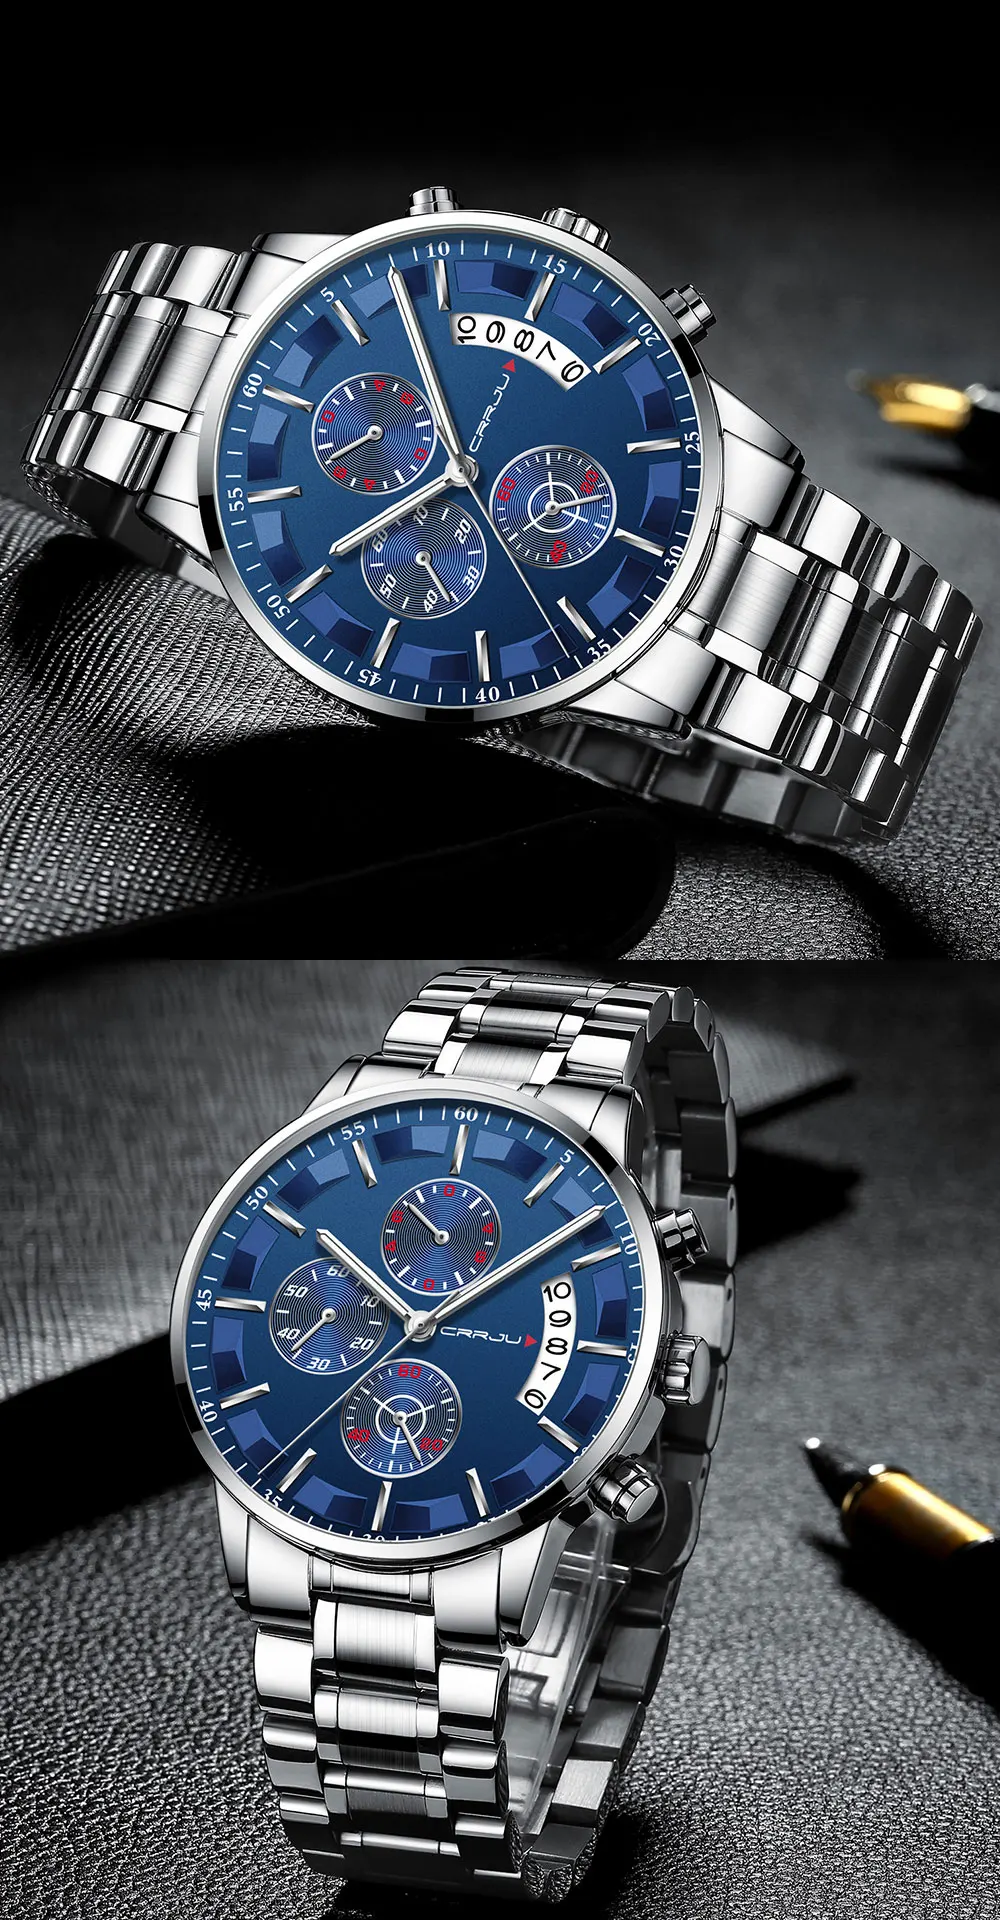 Мужские часы CRRJU Топ бренд водонепроницаемые спортивные часы с хронографом мужские повседневные кварцевые часы из нержавеющей стали Relogio Masculino